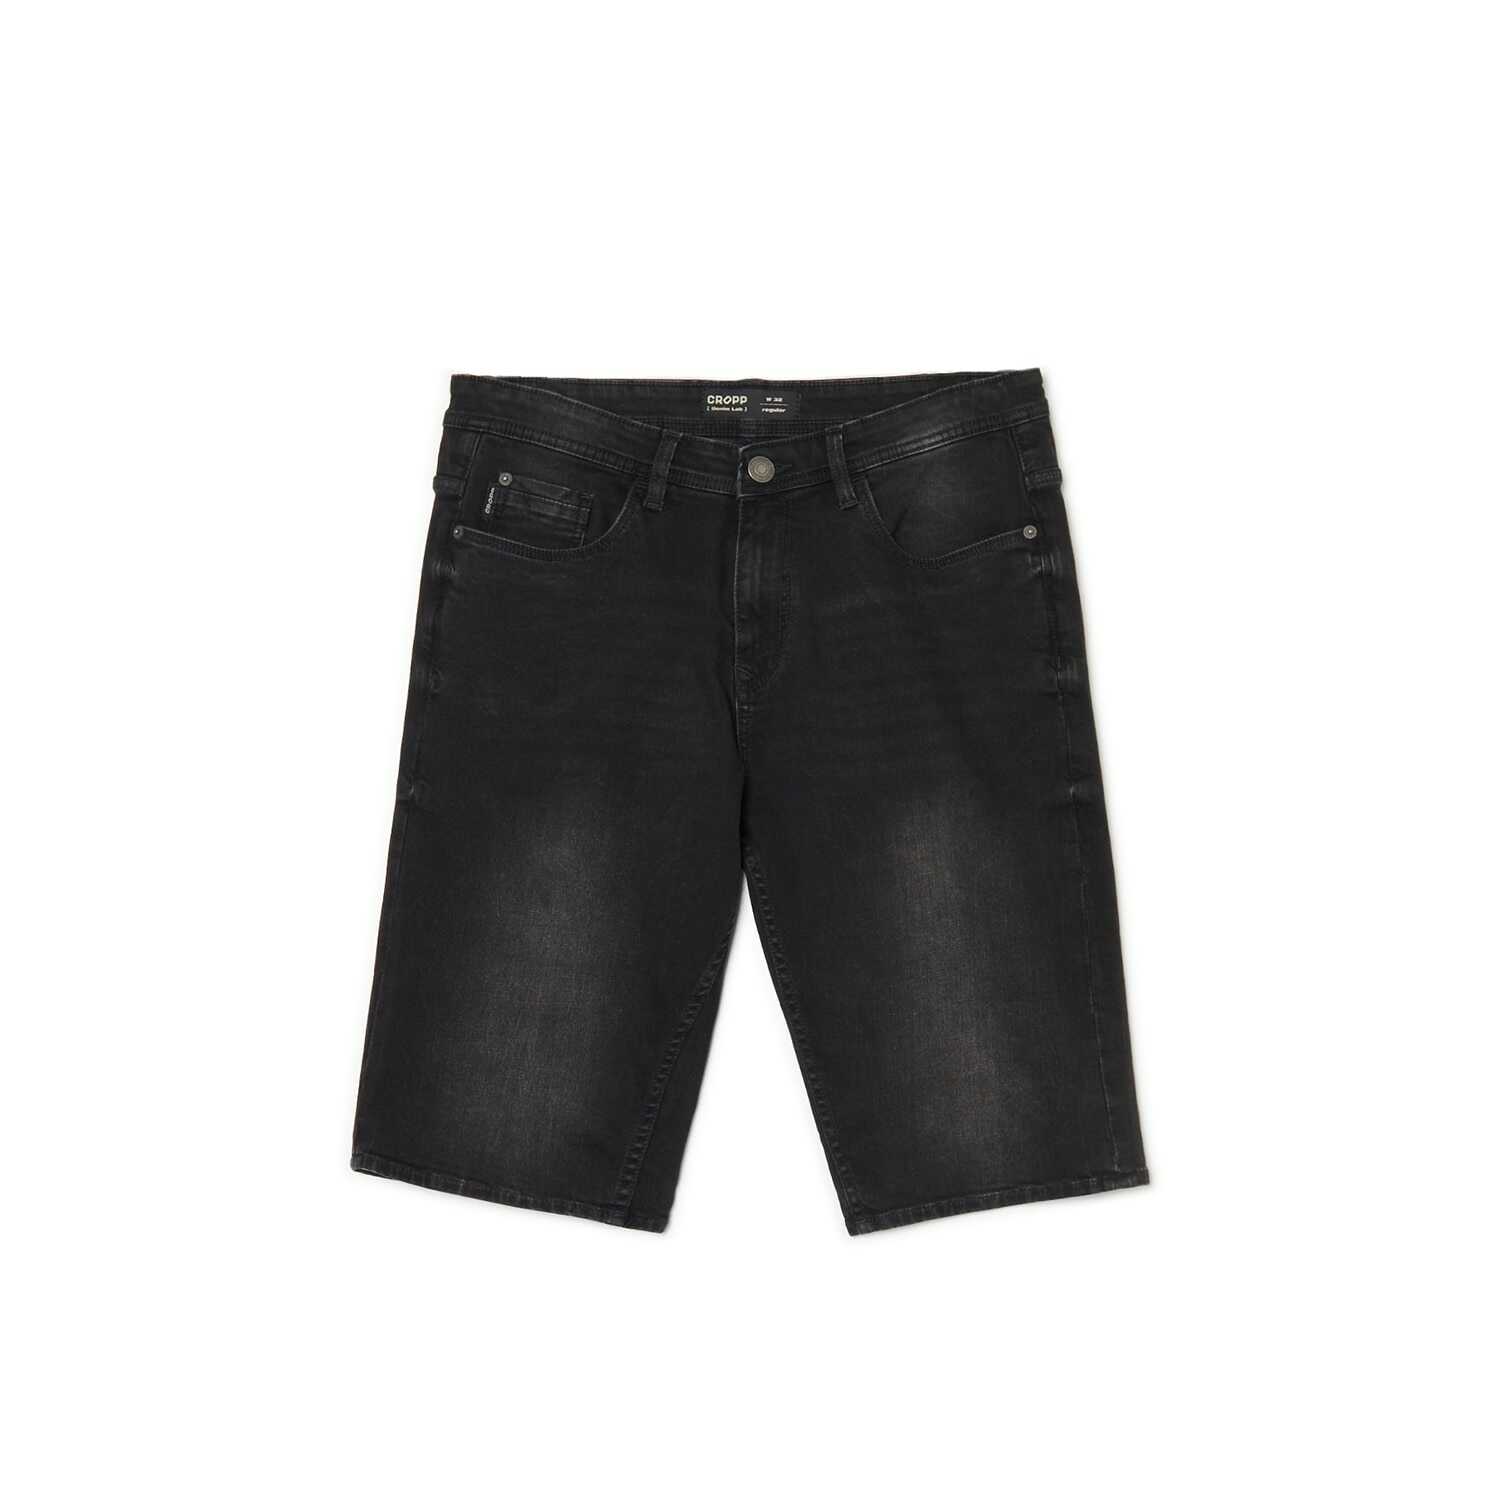 Cropp - Czarne jeansowe szorty - Czarny